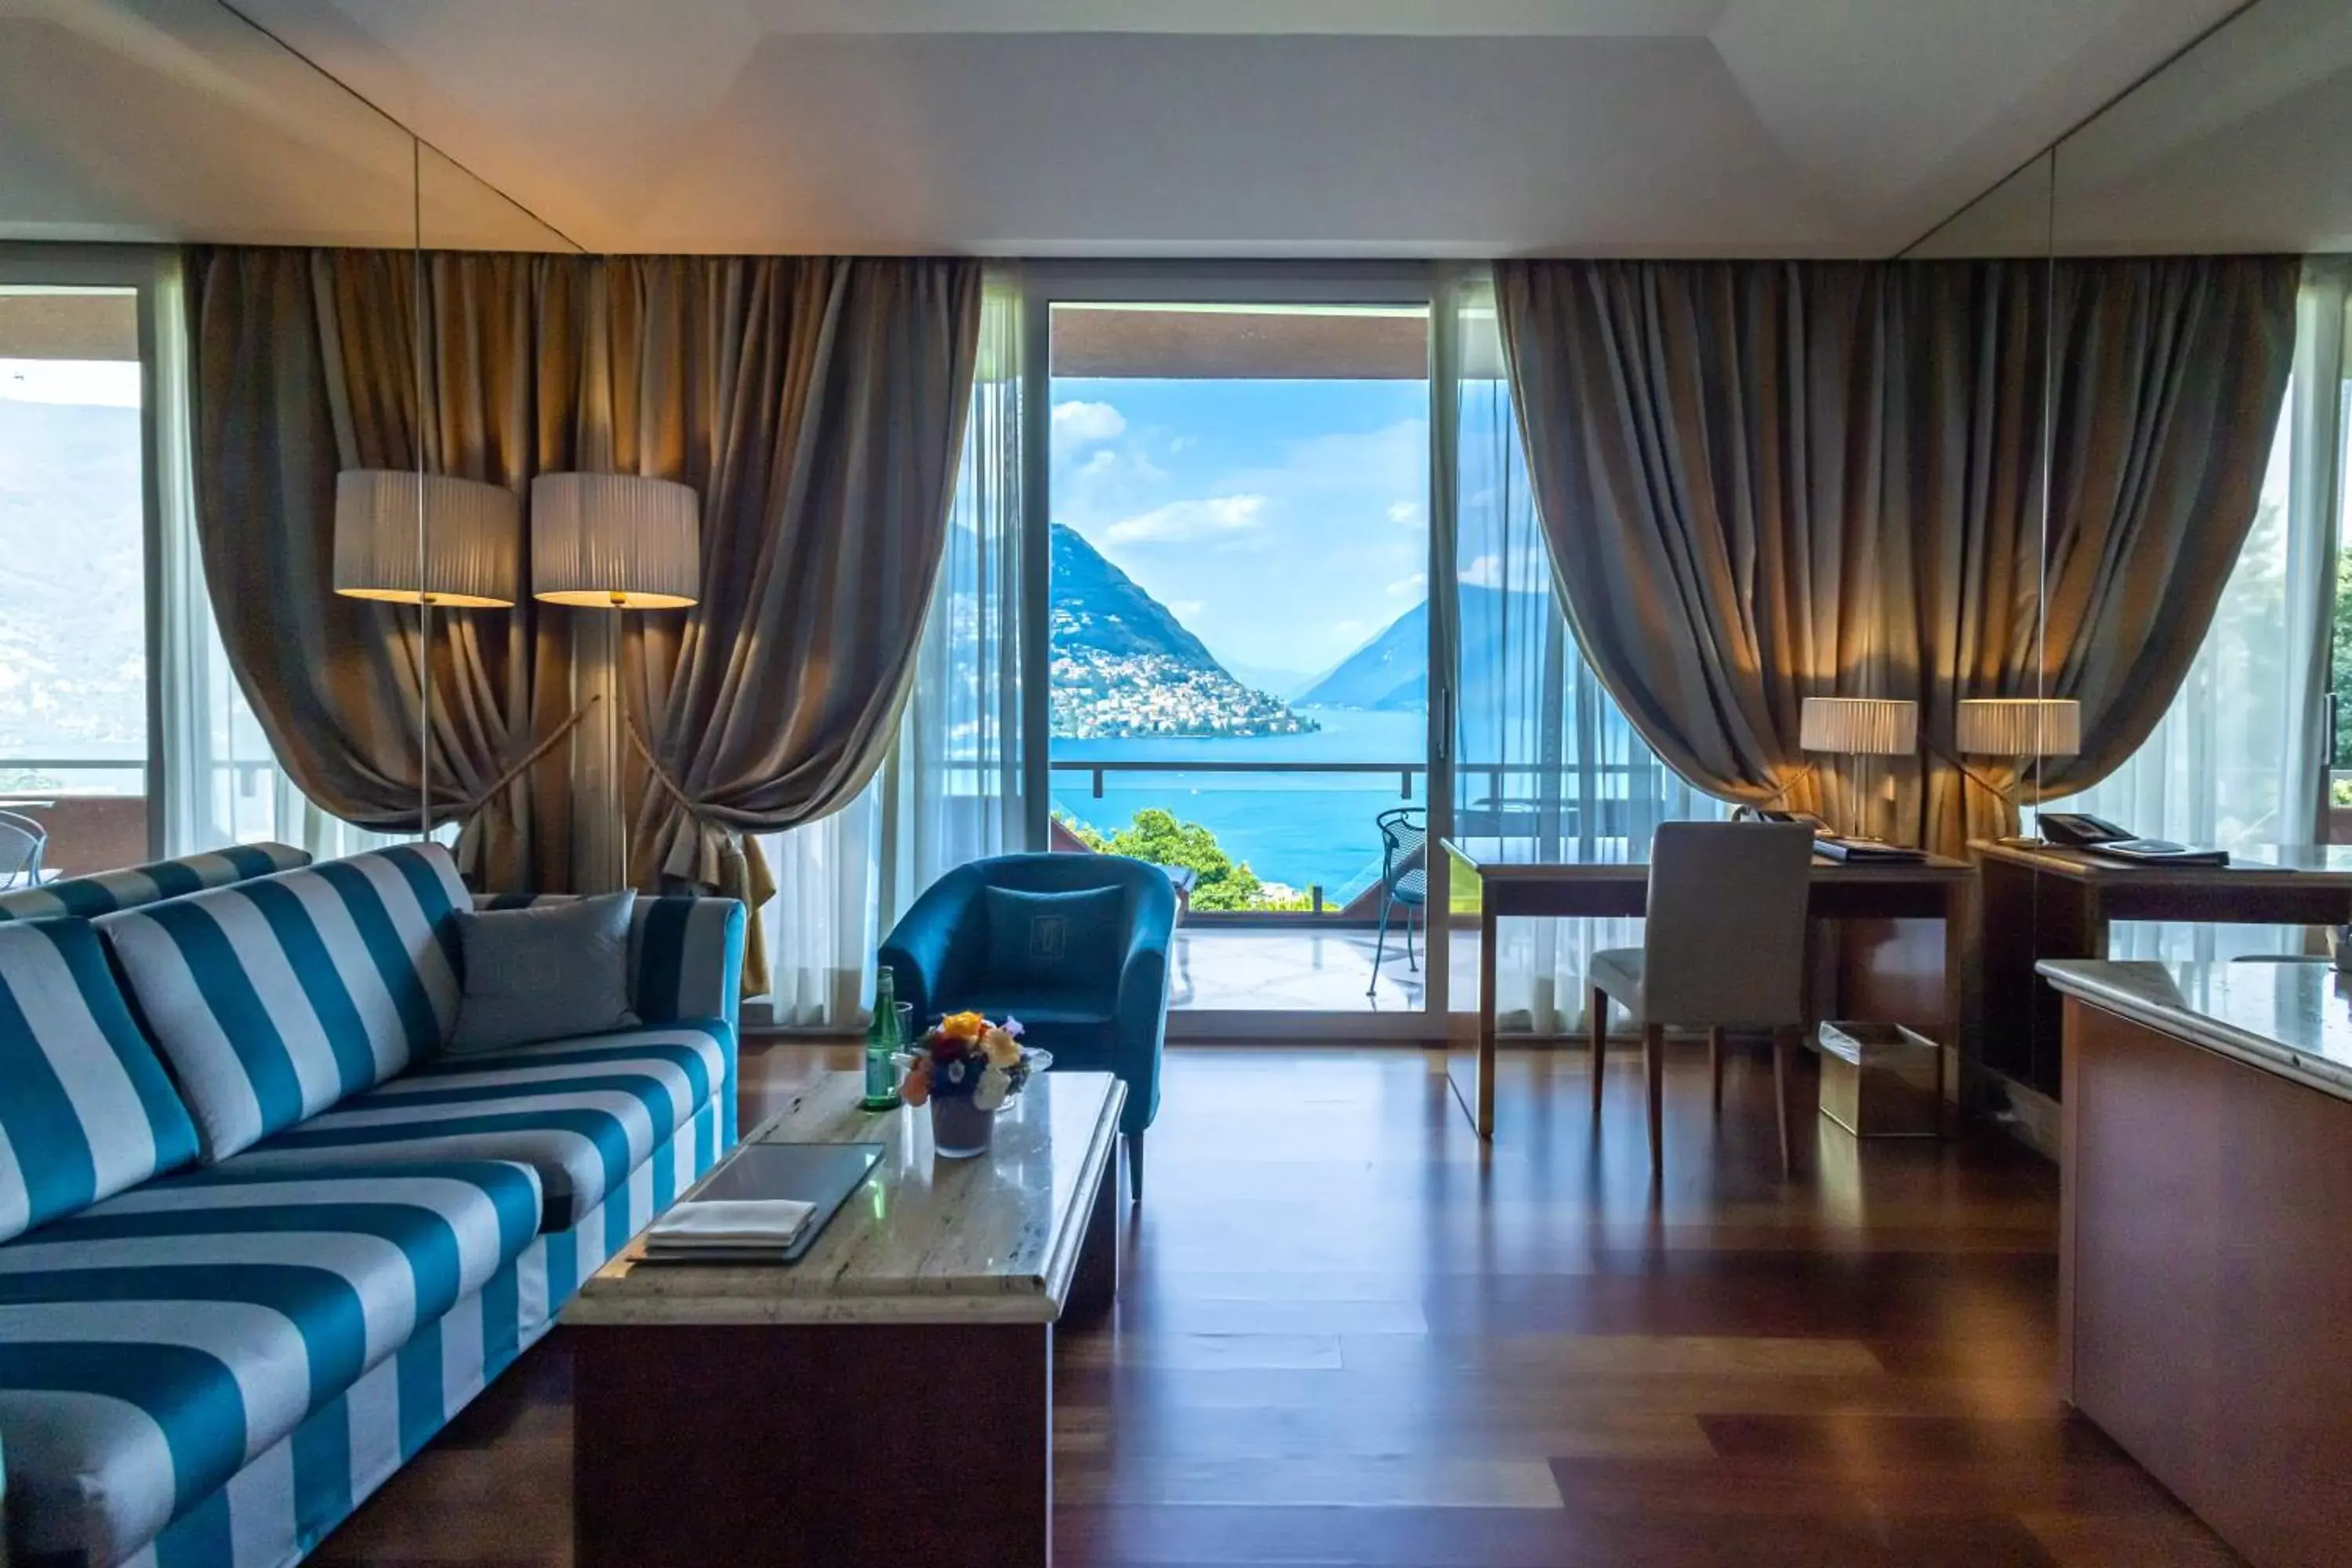 Seating Area in Villa Principe Leopoldo - Ticino Hotels Group